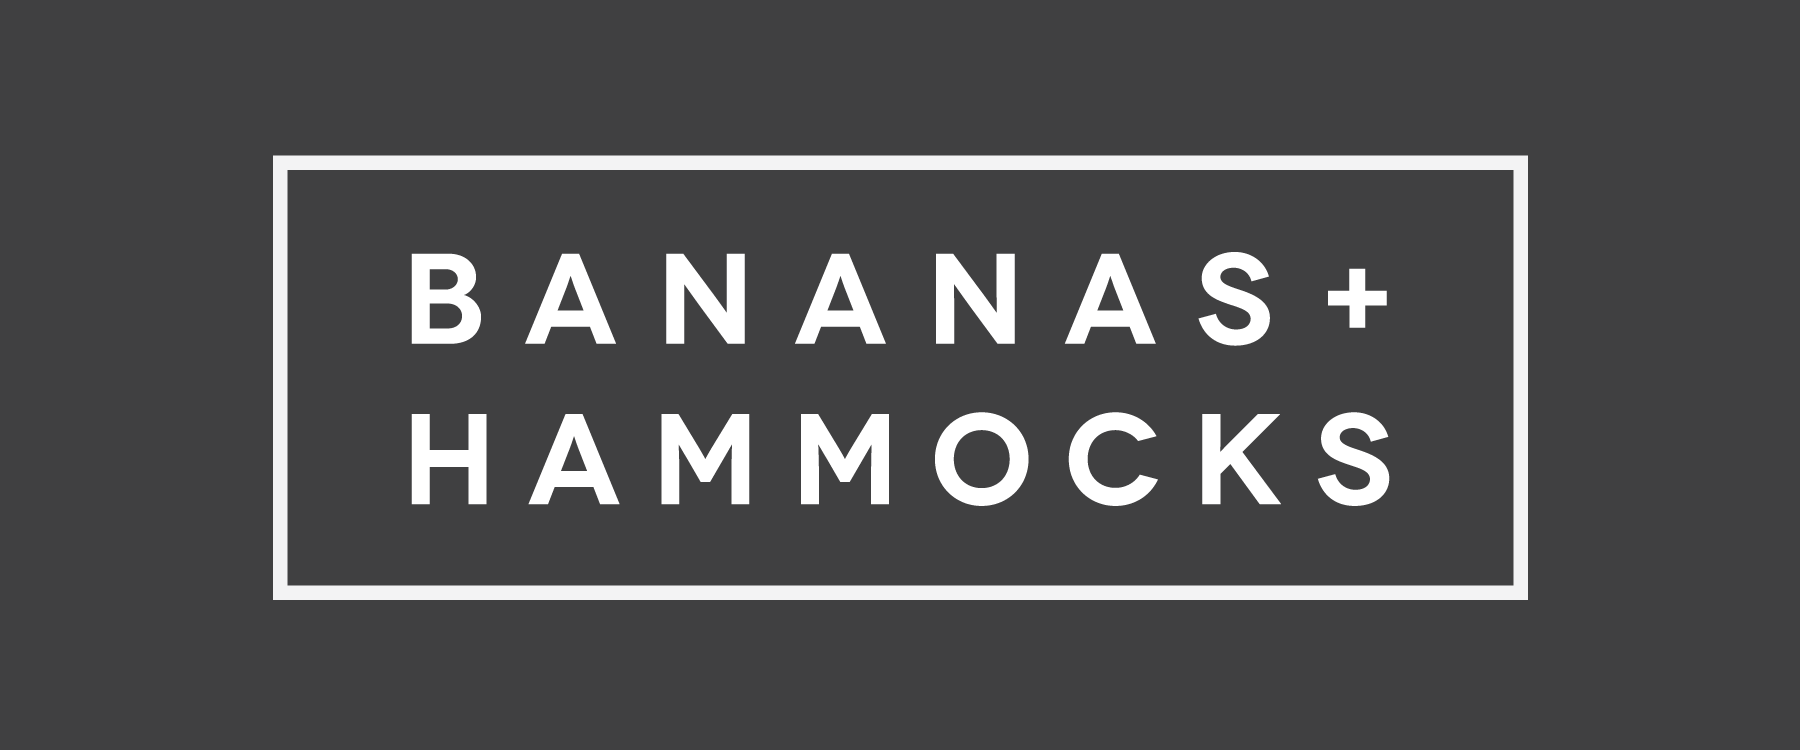 bananasandhammocks-logotype.png